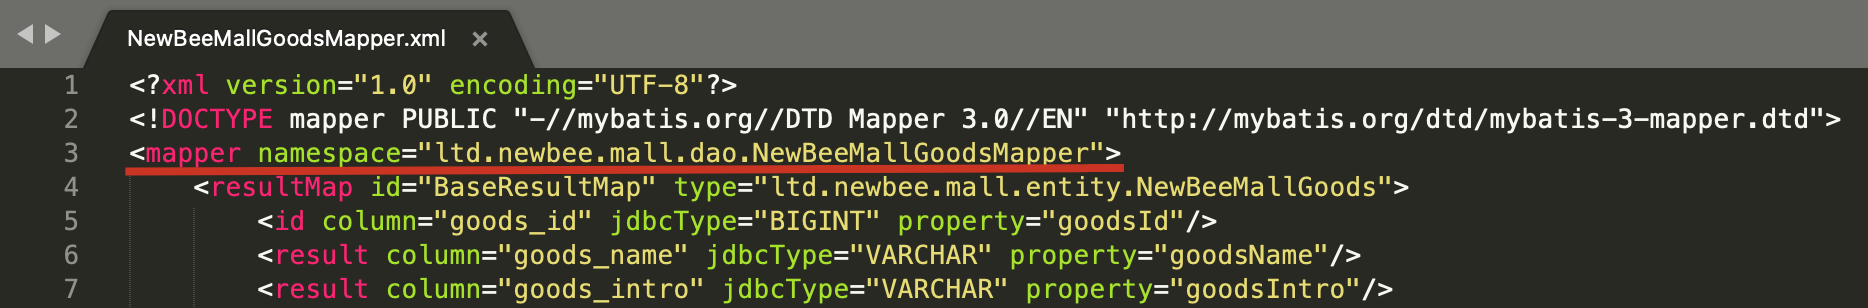 mapper-namespace